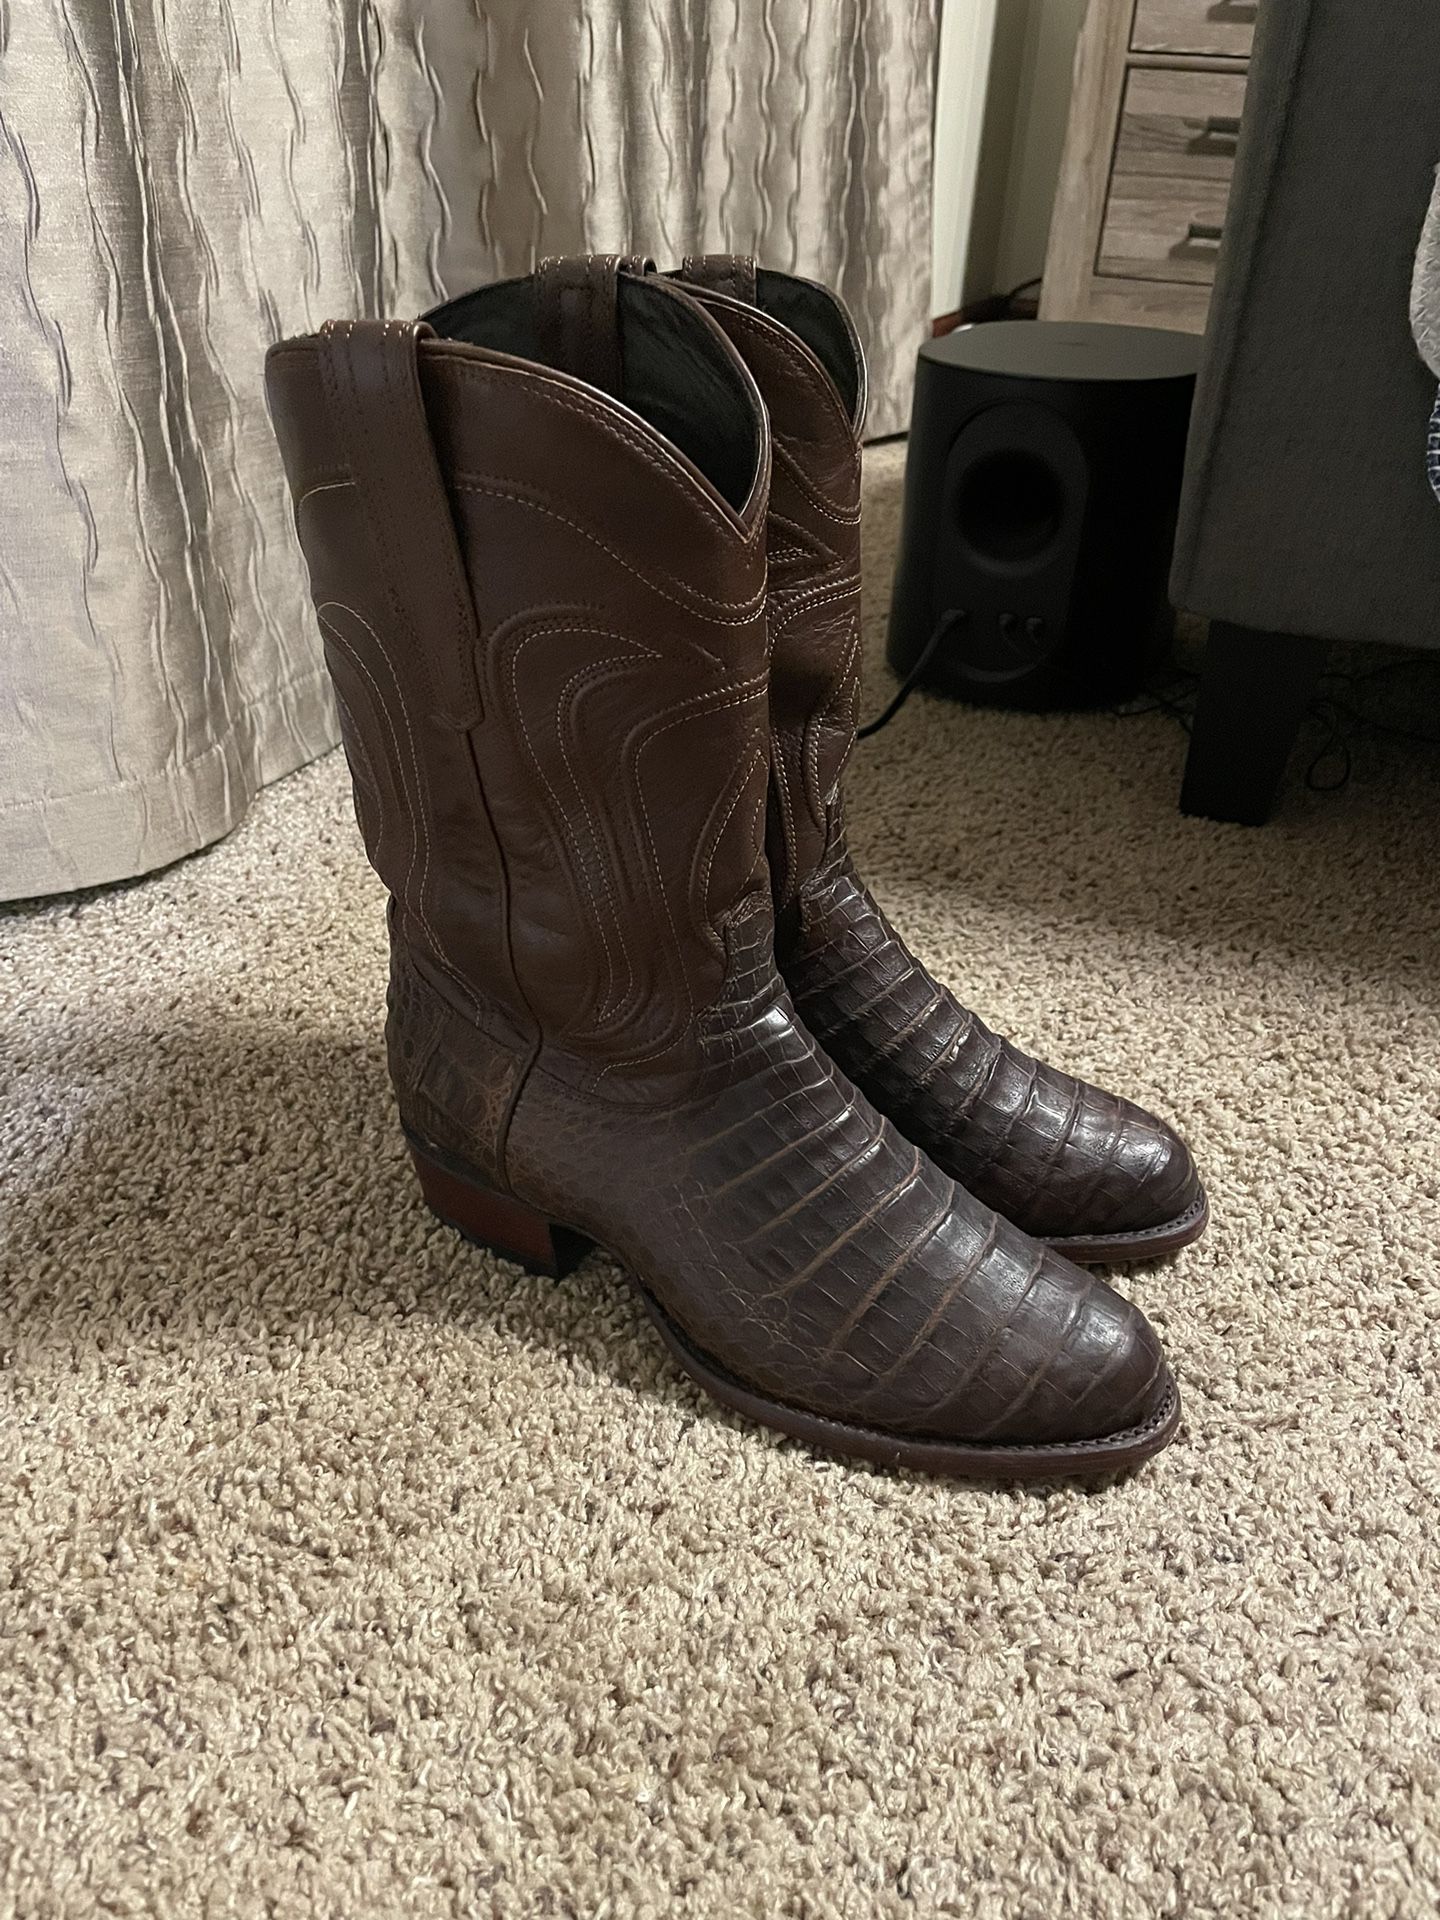 Tecovas Caiman Boots 9.5EE